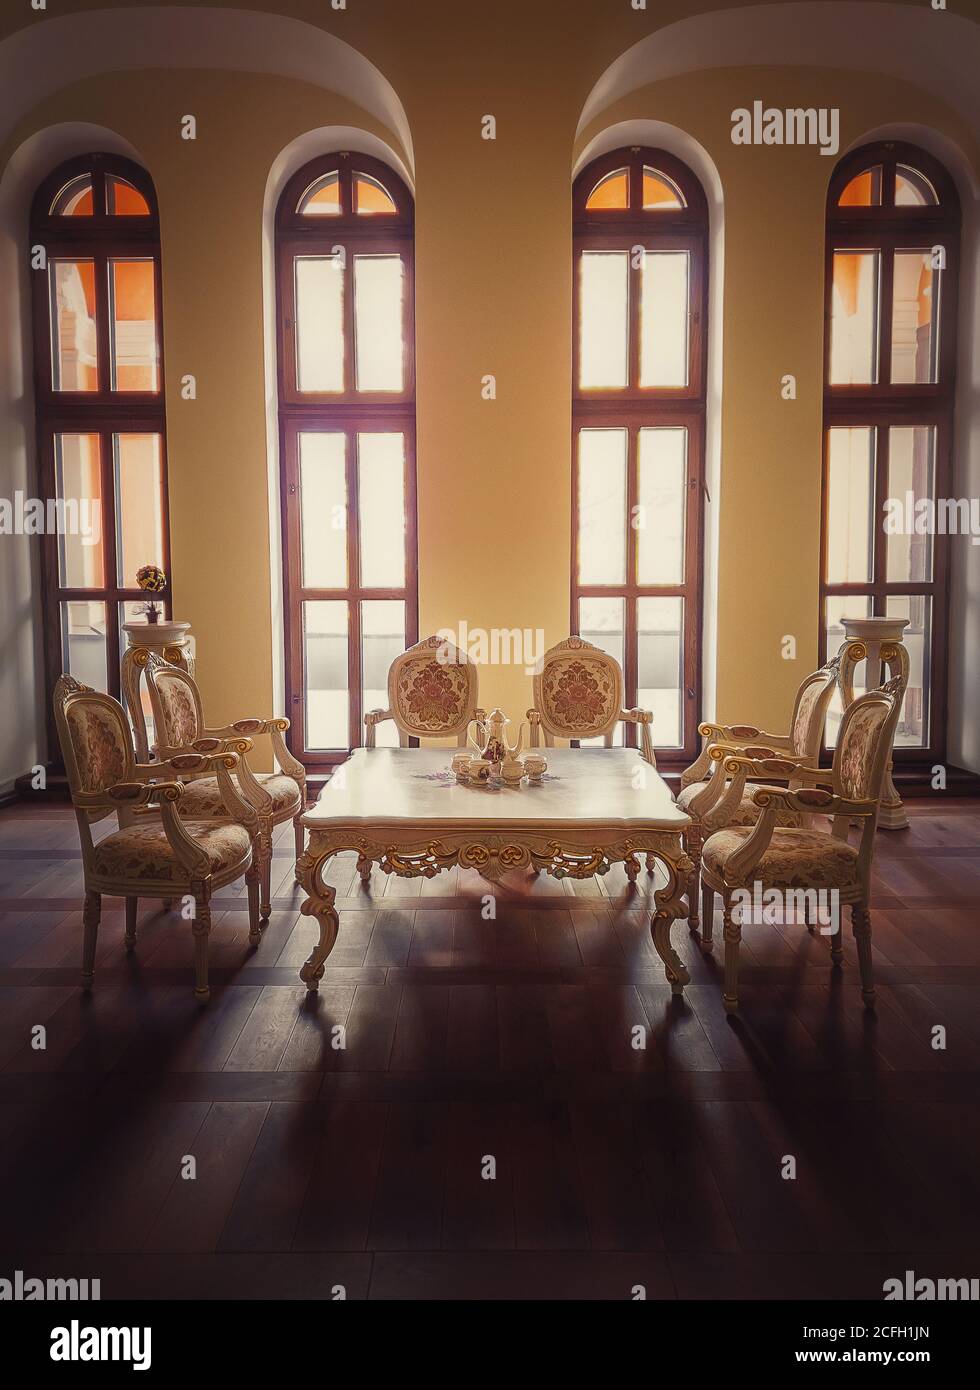 Antiguo comedor de la realeza, muebles de estilo medieval con sillas  adornadas de oro y mesa cerca de las ventanas arqueadas. Lujo de alojamiento  de fondo habitación, viejo Fotografía de stock -